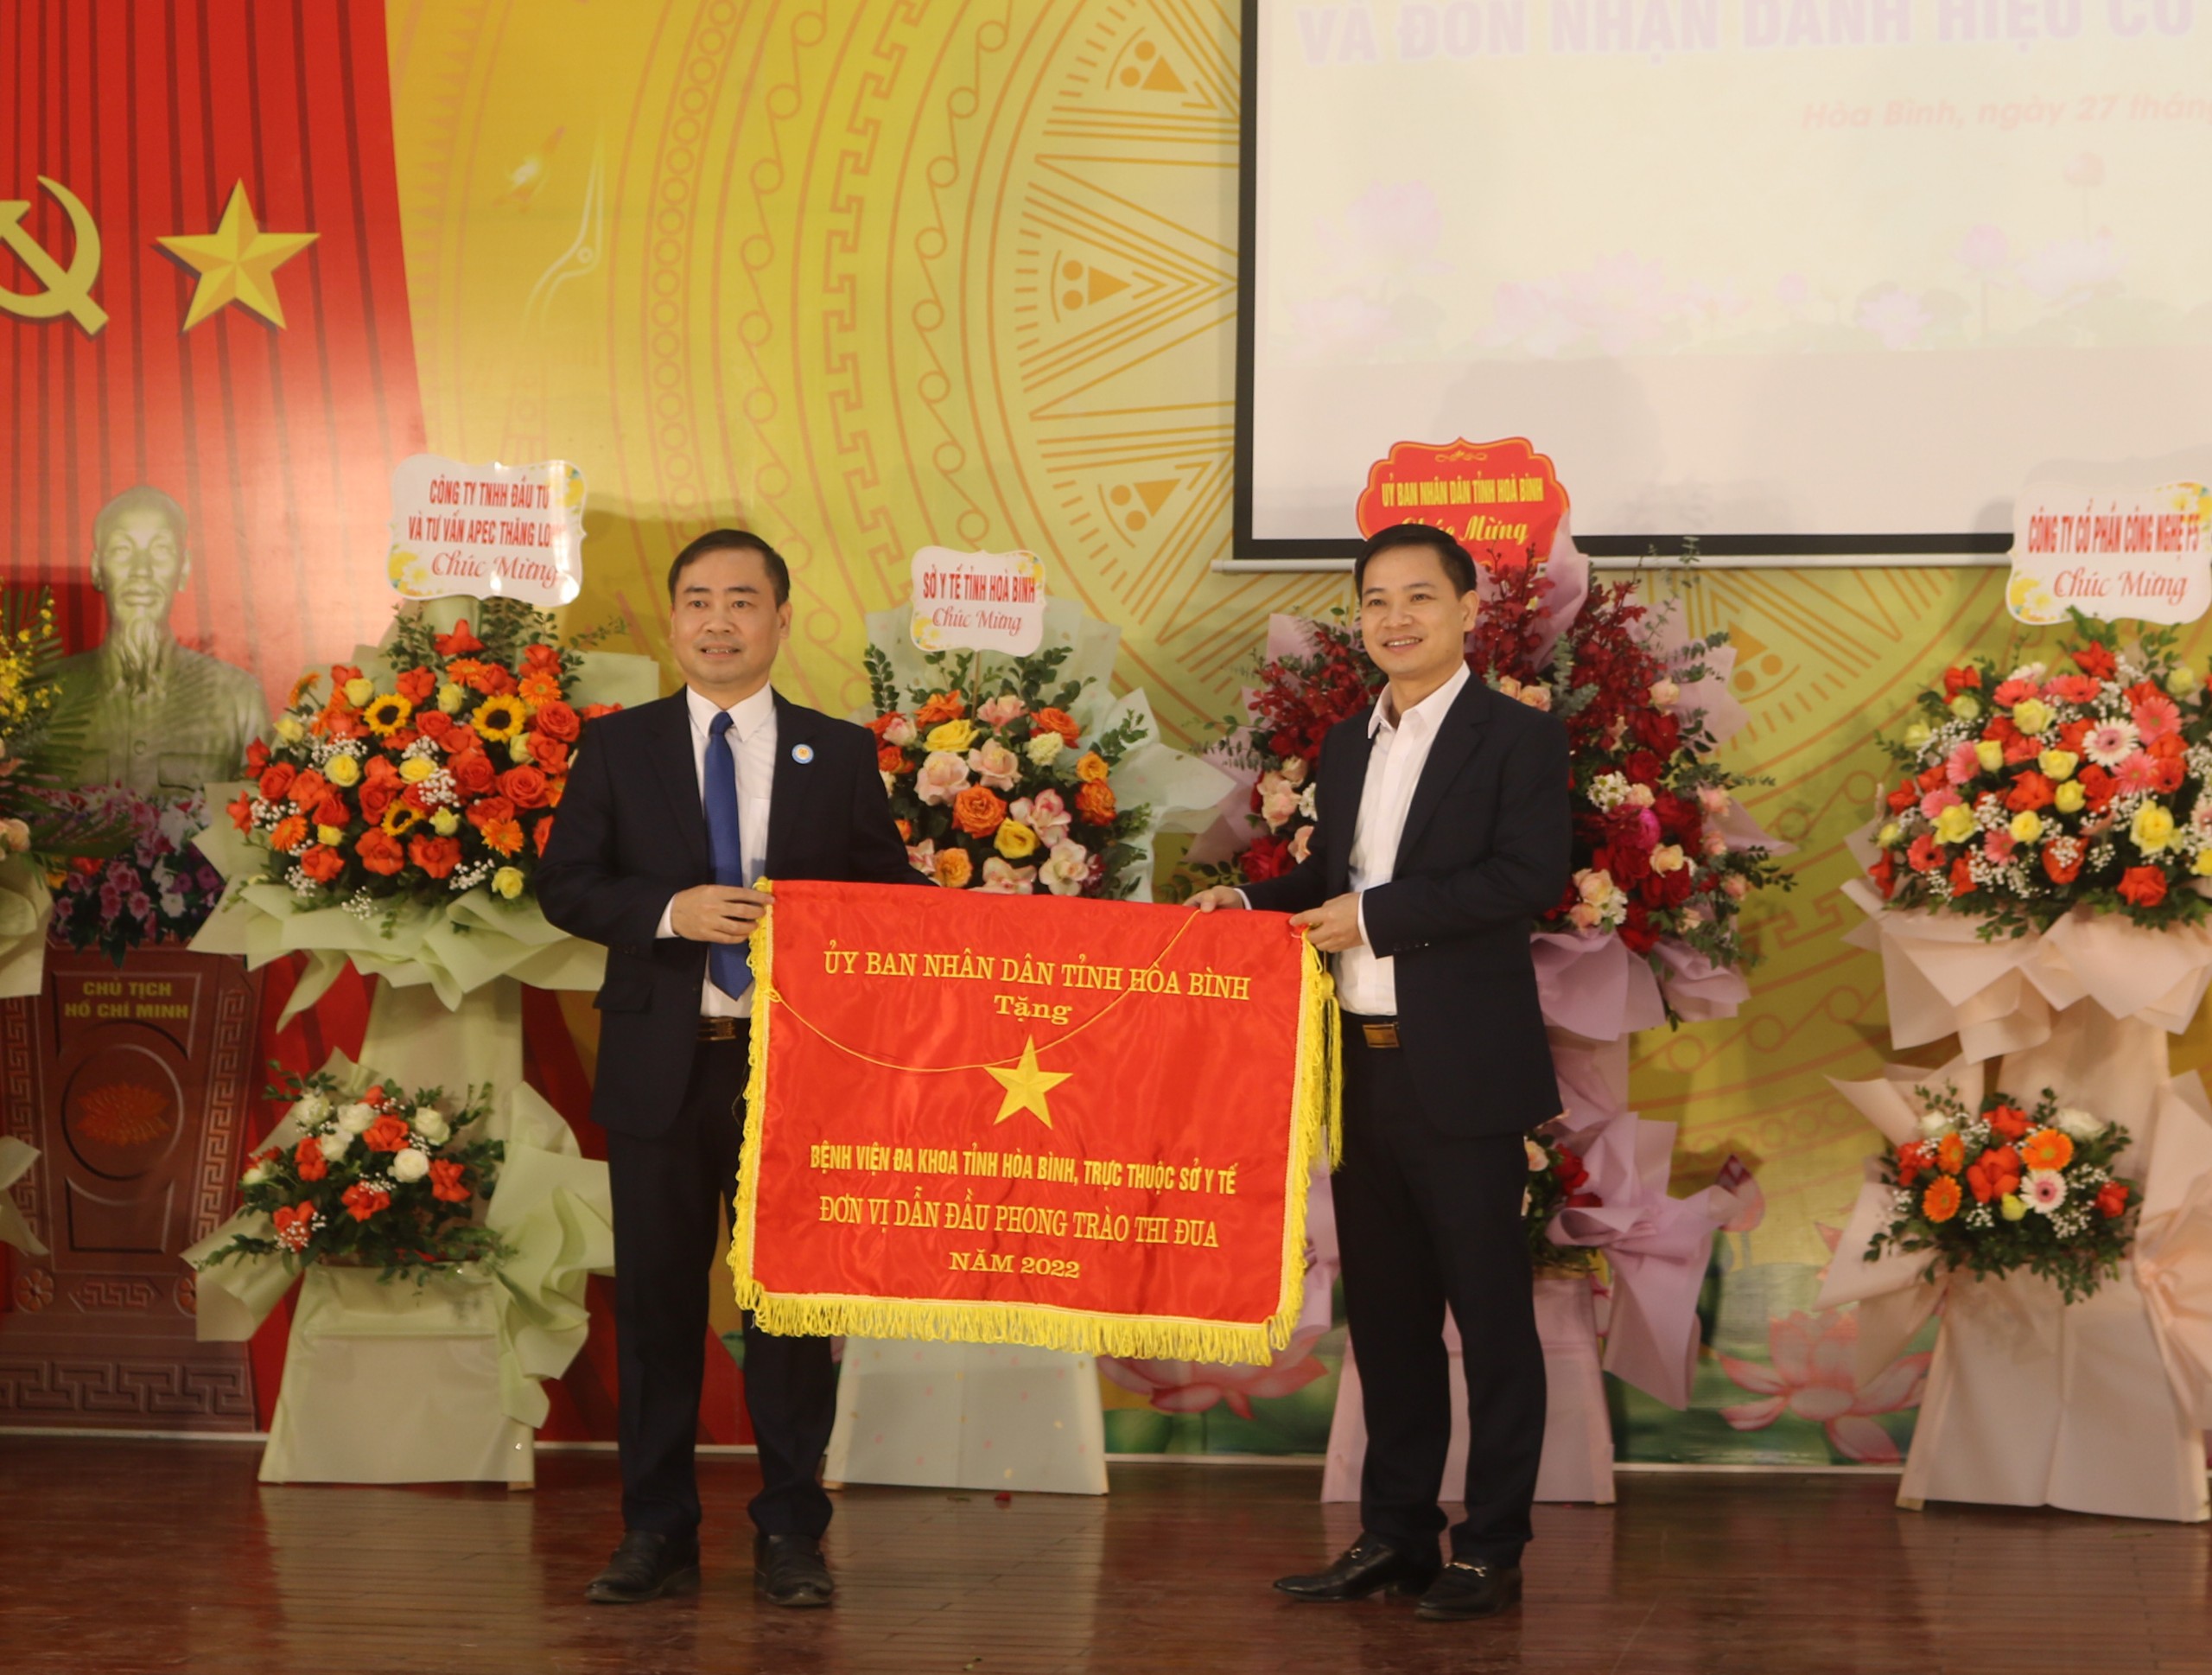  Bệnh viện Đa khoa tỉnh Hòa Bình đón nhận cờ thi đua của UBND tỉnh